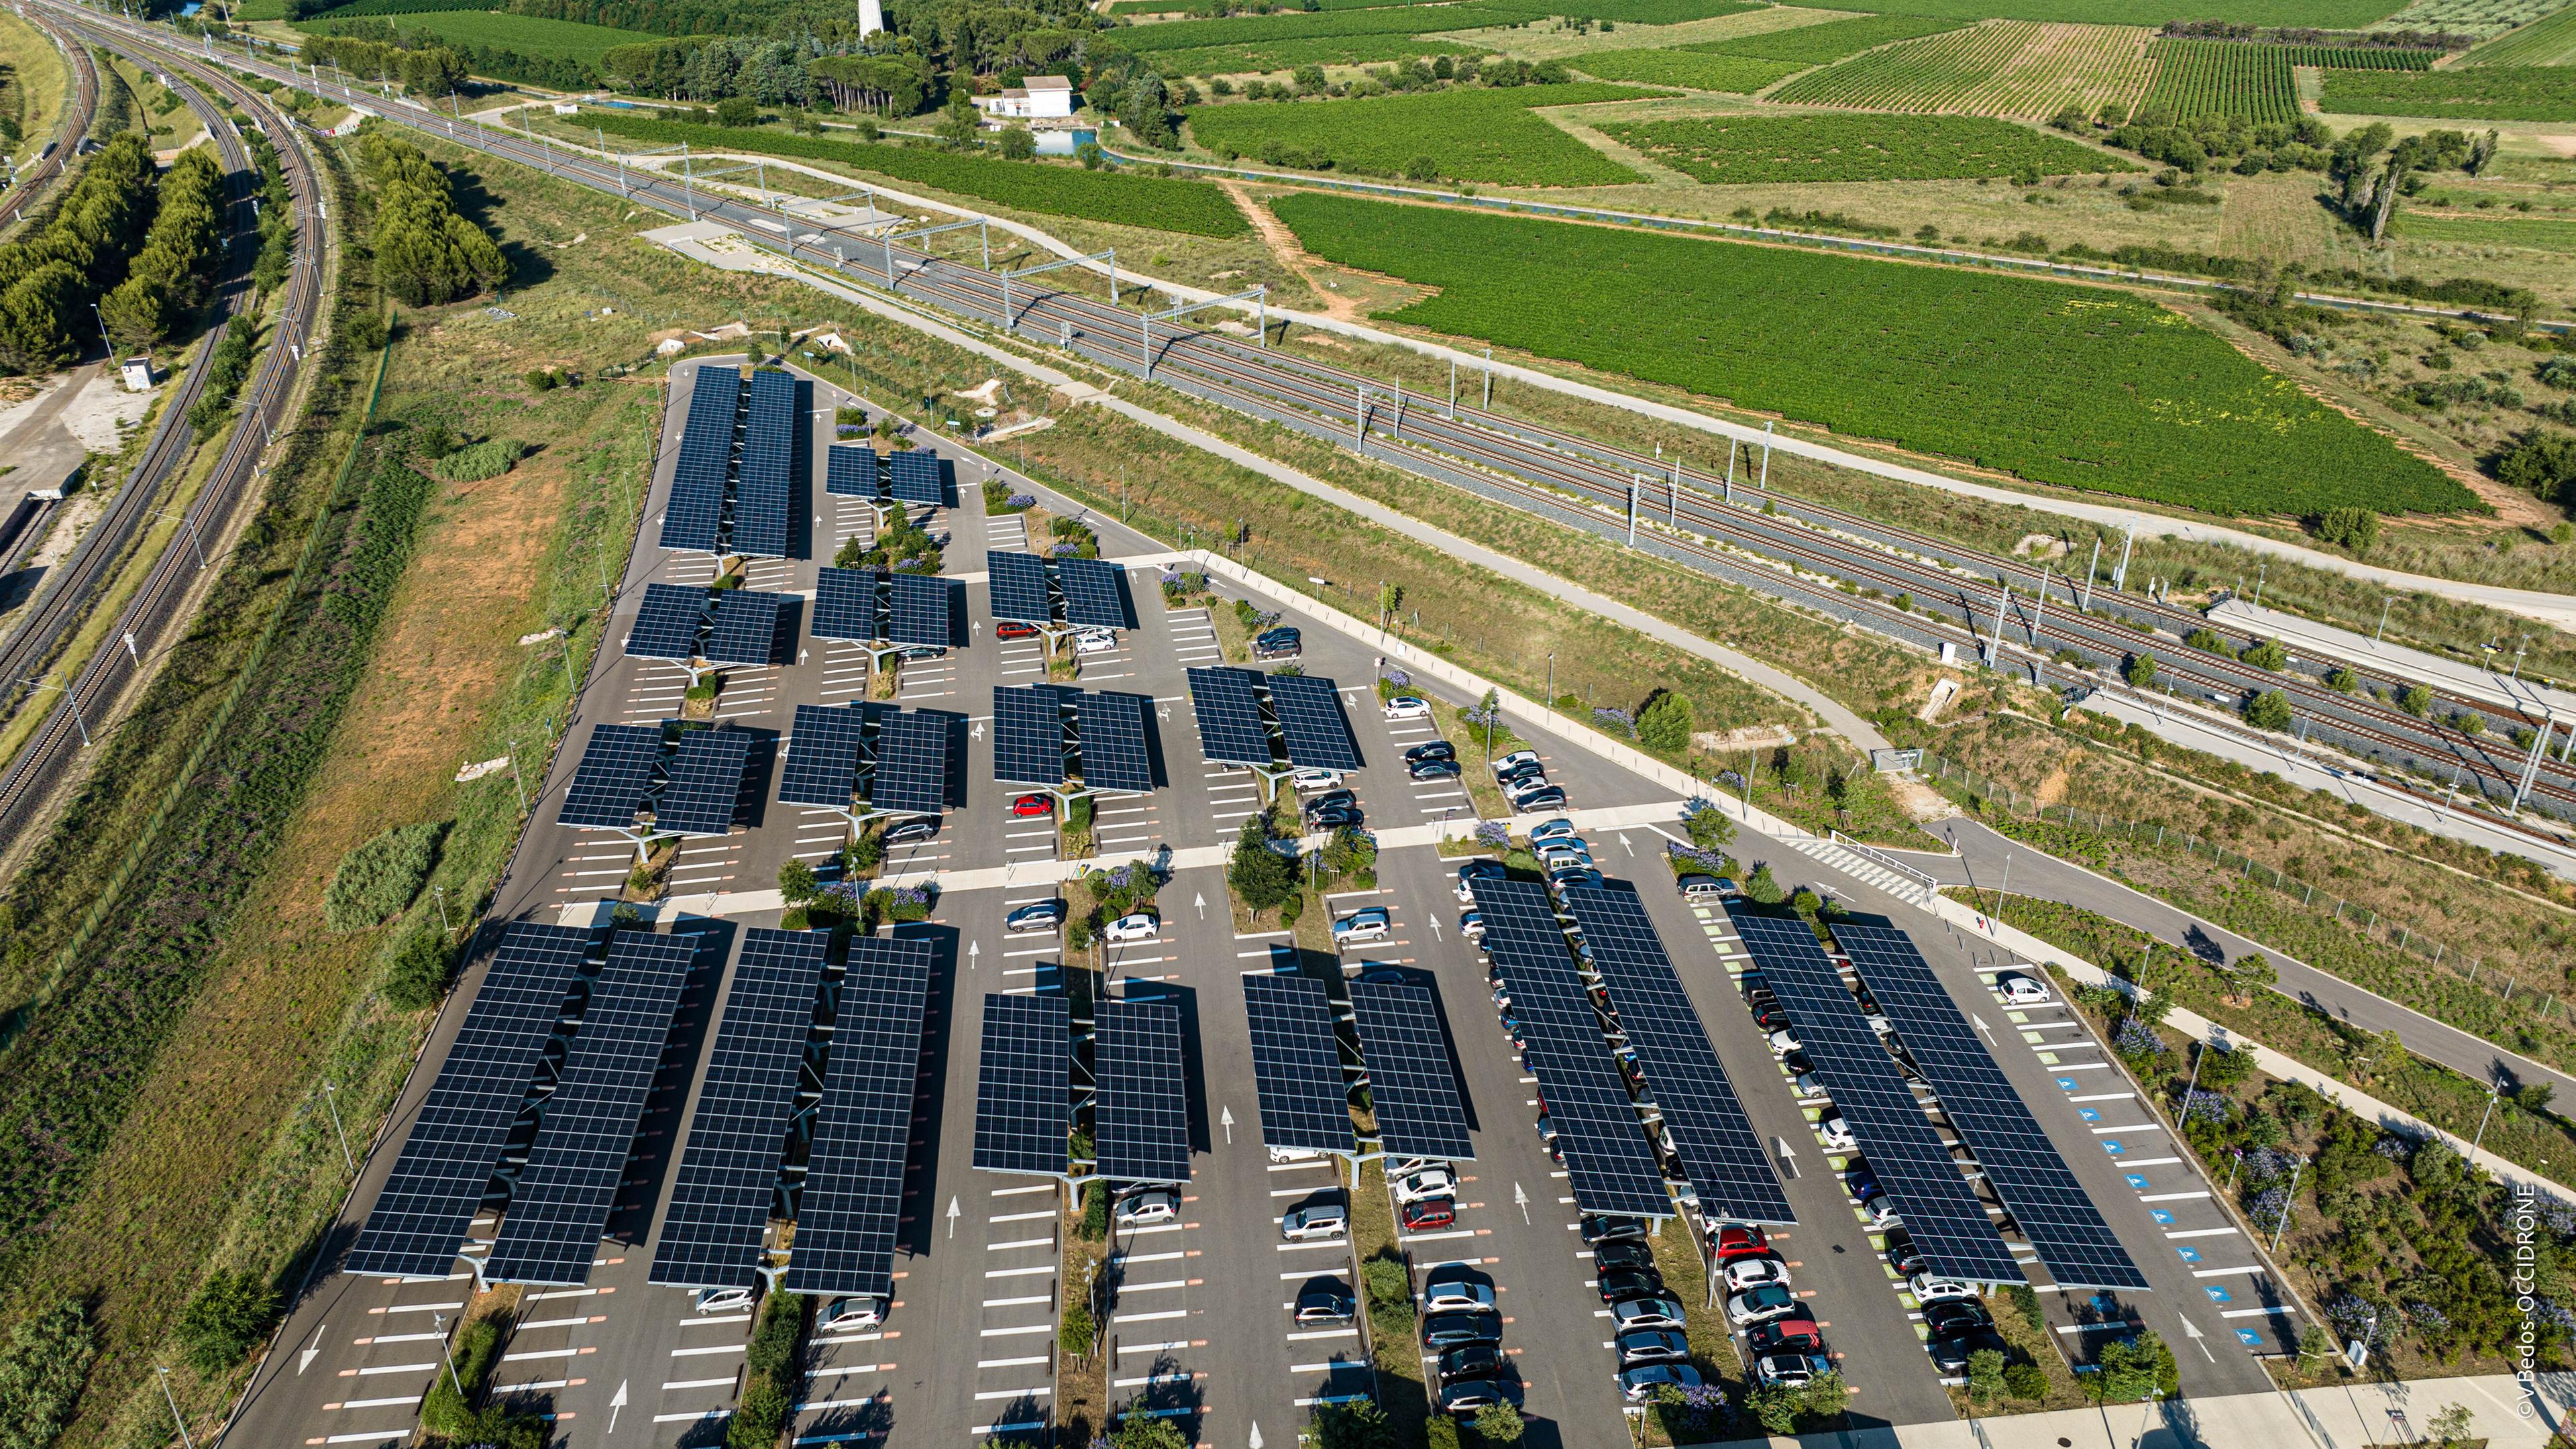 Frankreich, Nîmes: Parkplätze an einem Bahnhof sind mit Solaranlagen überdacht